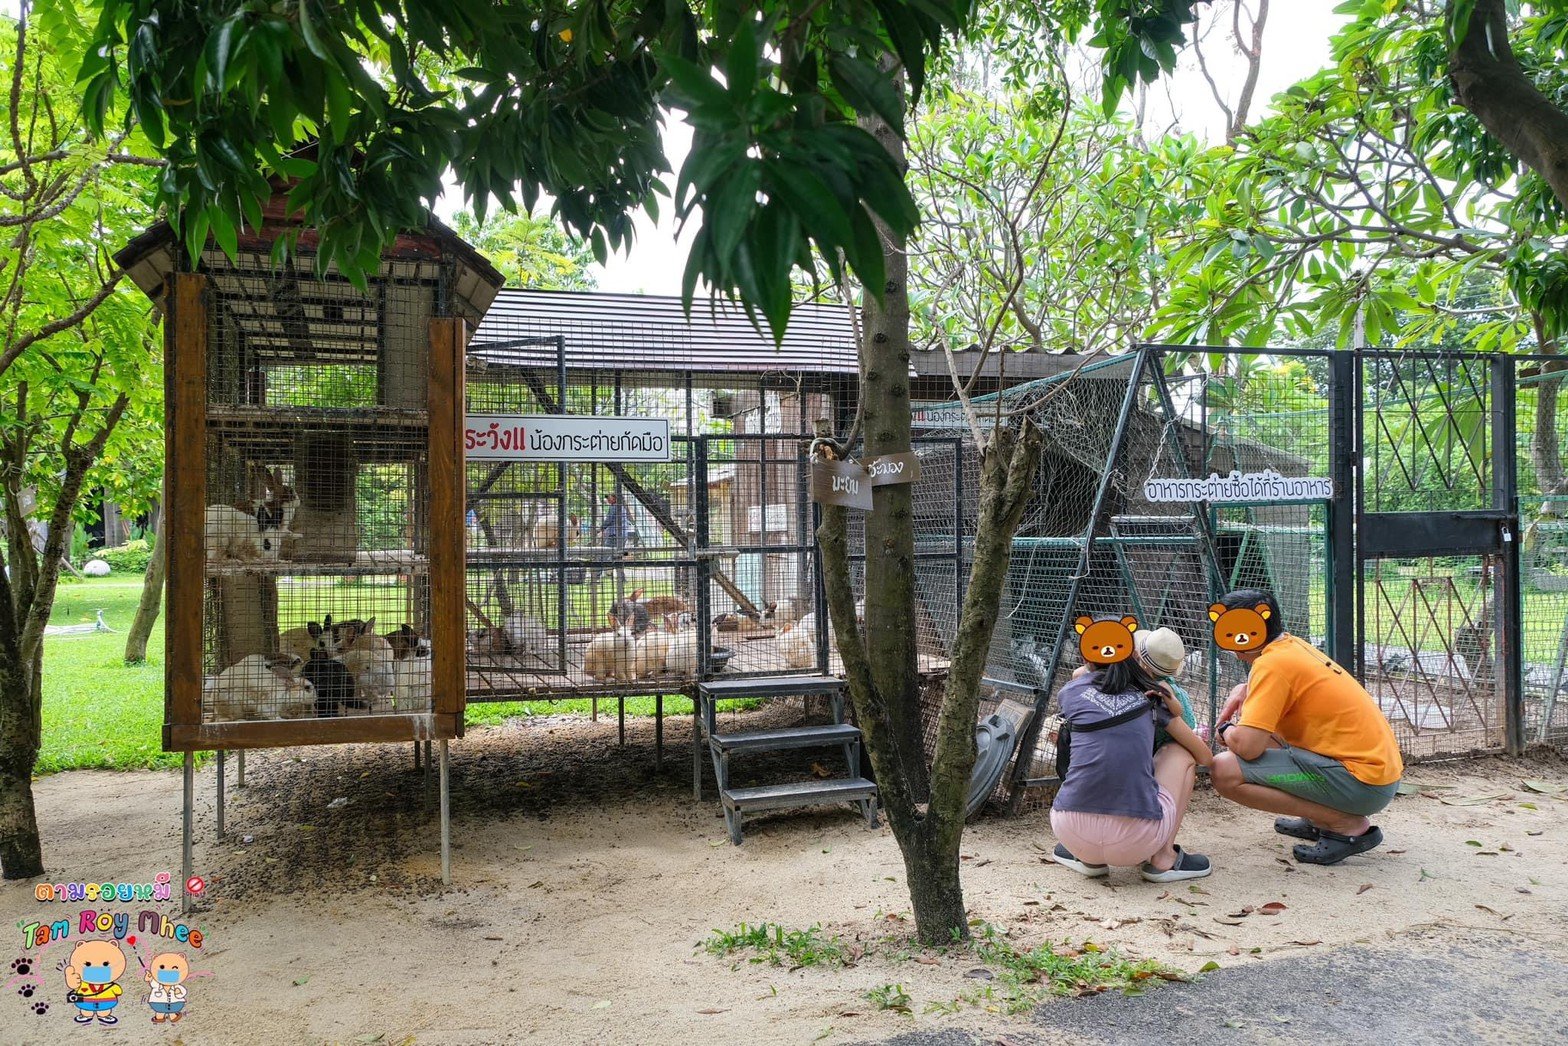 ฟาร์มคาเฟ่ ที่มีกิจกรรมเด็กที่เยอะที่สุดในชลบุรี